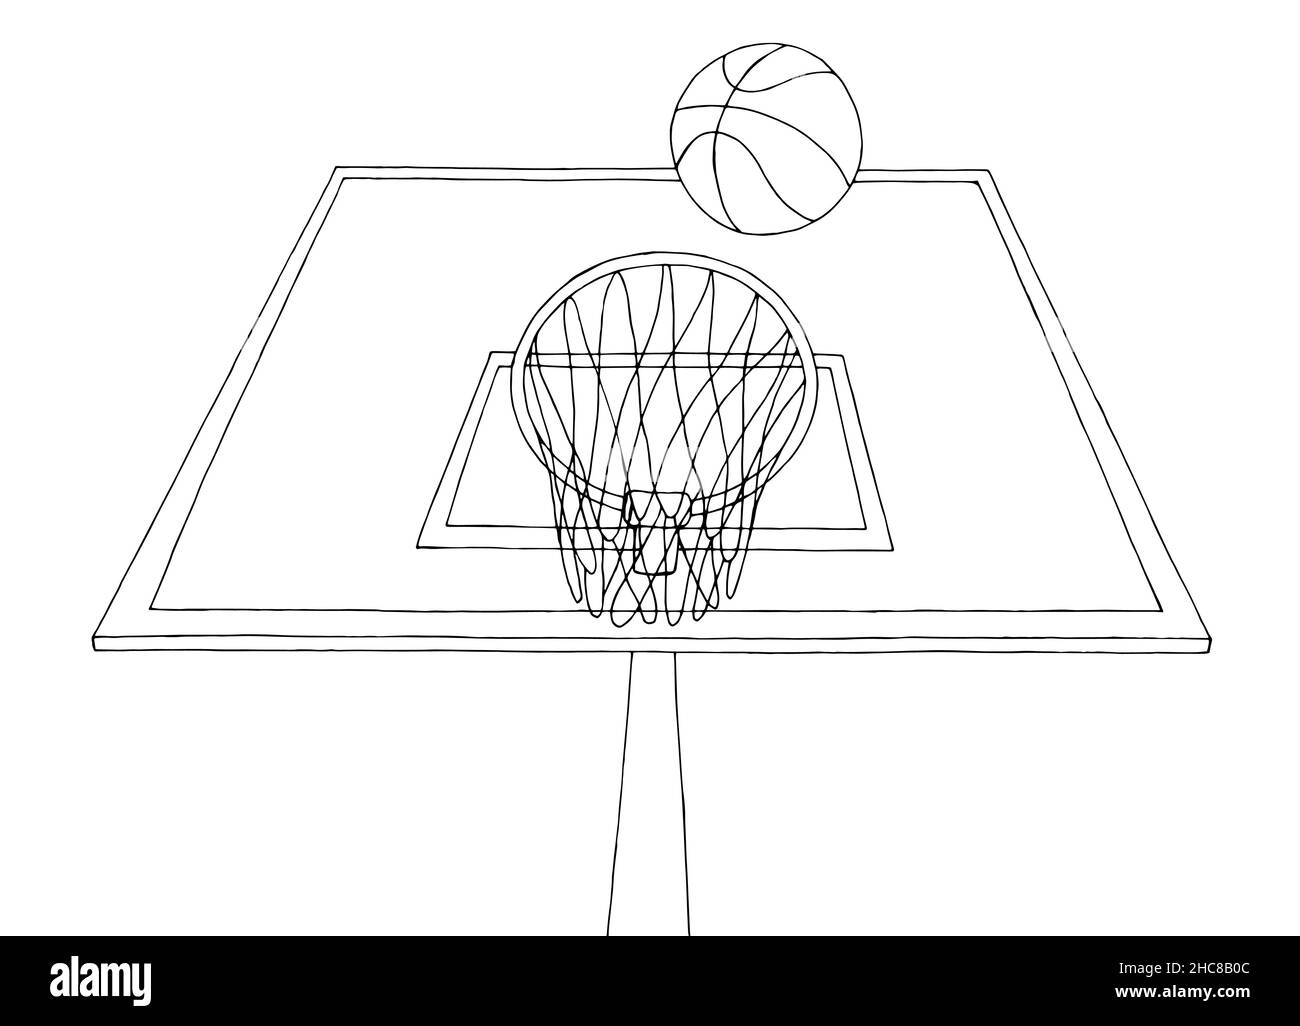 Aro de baloncesto Imágenes vectoriales de stock - Alamy